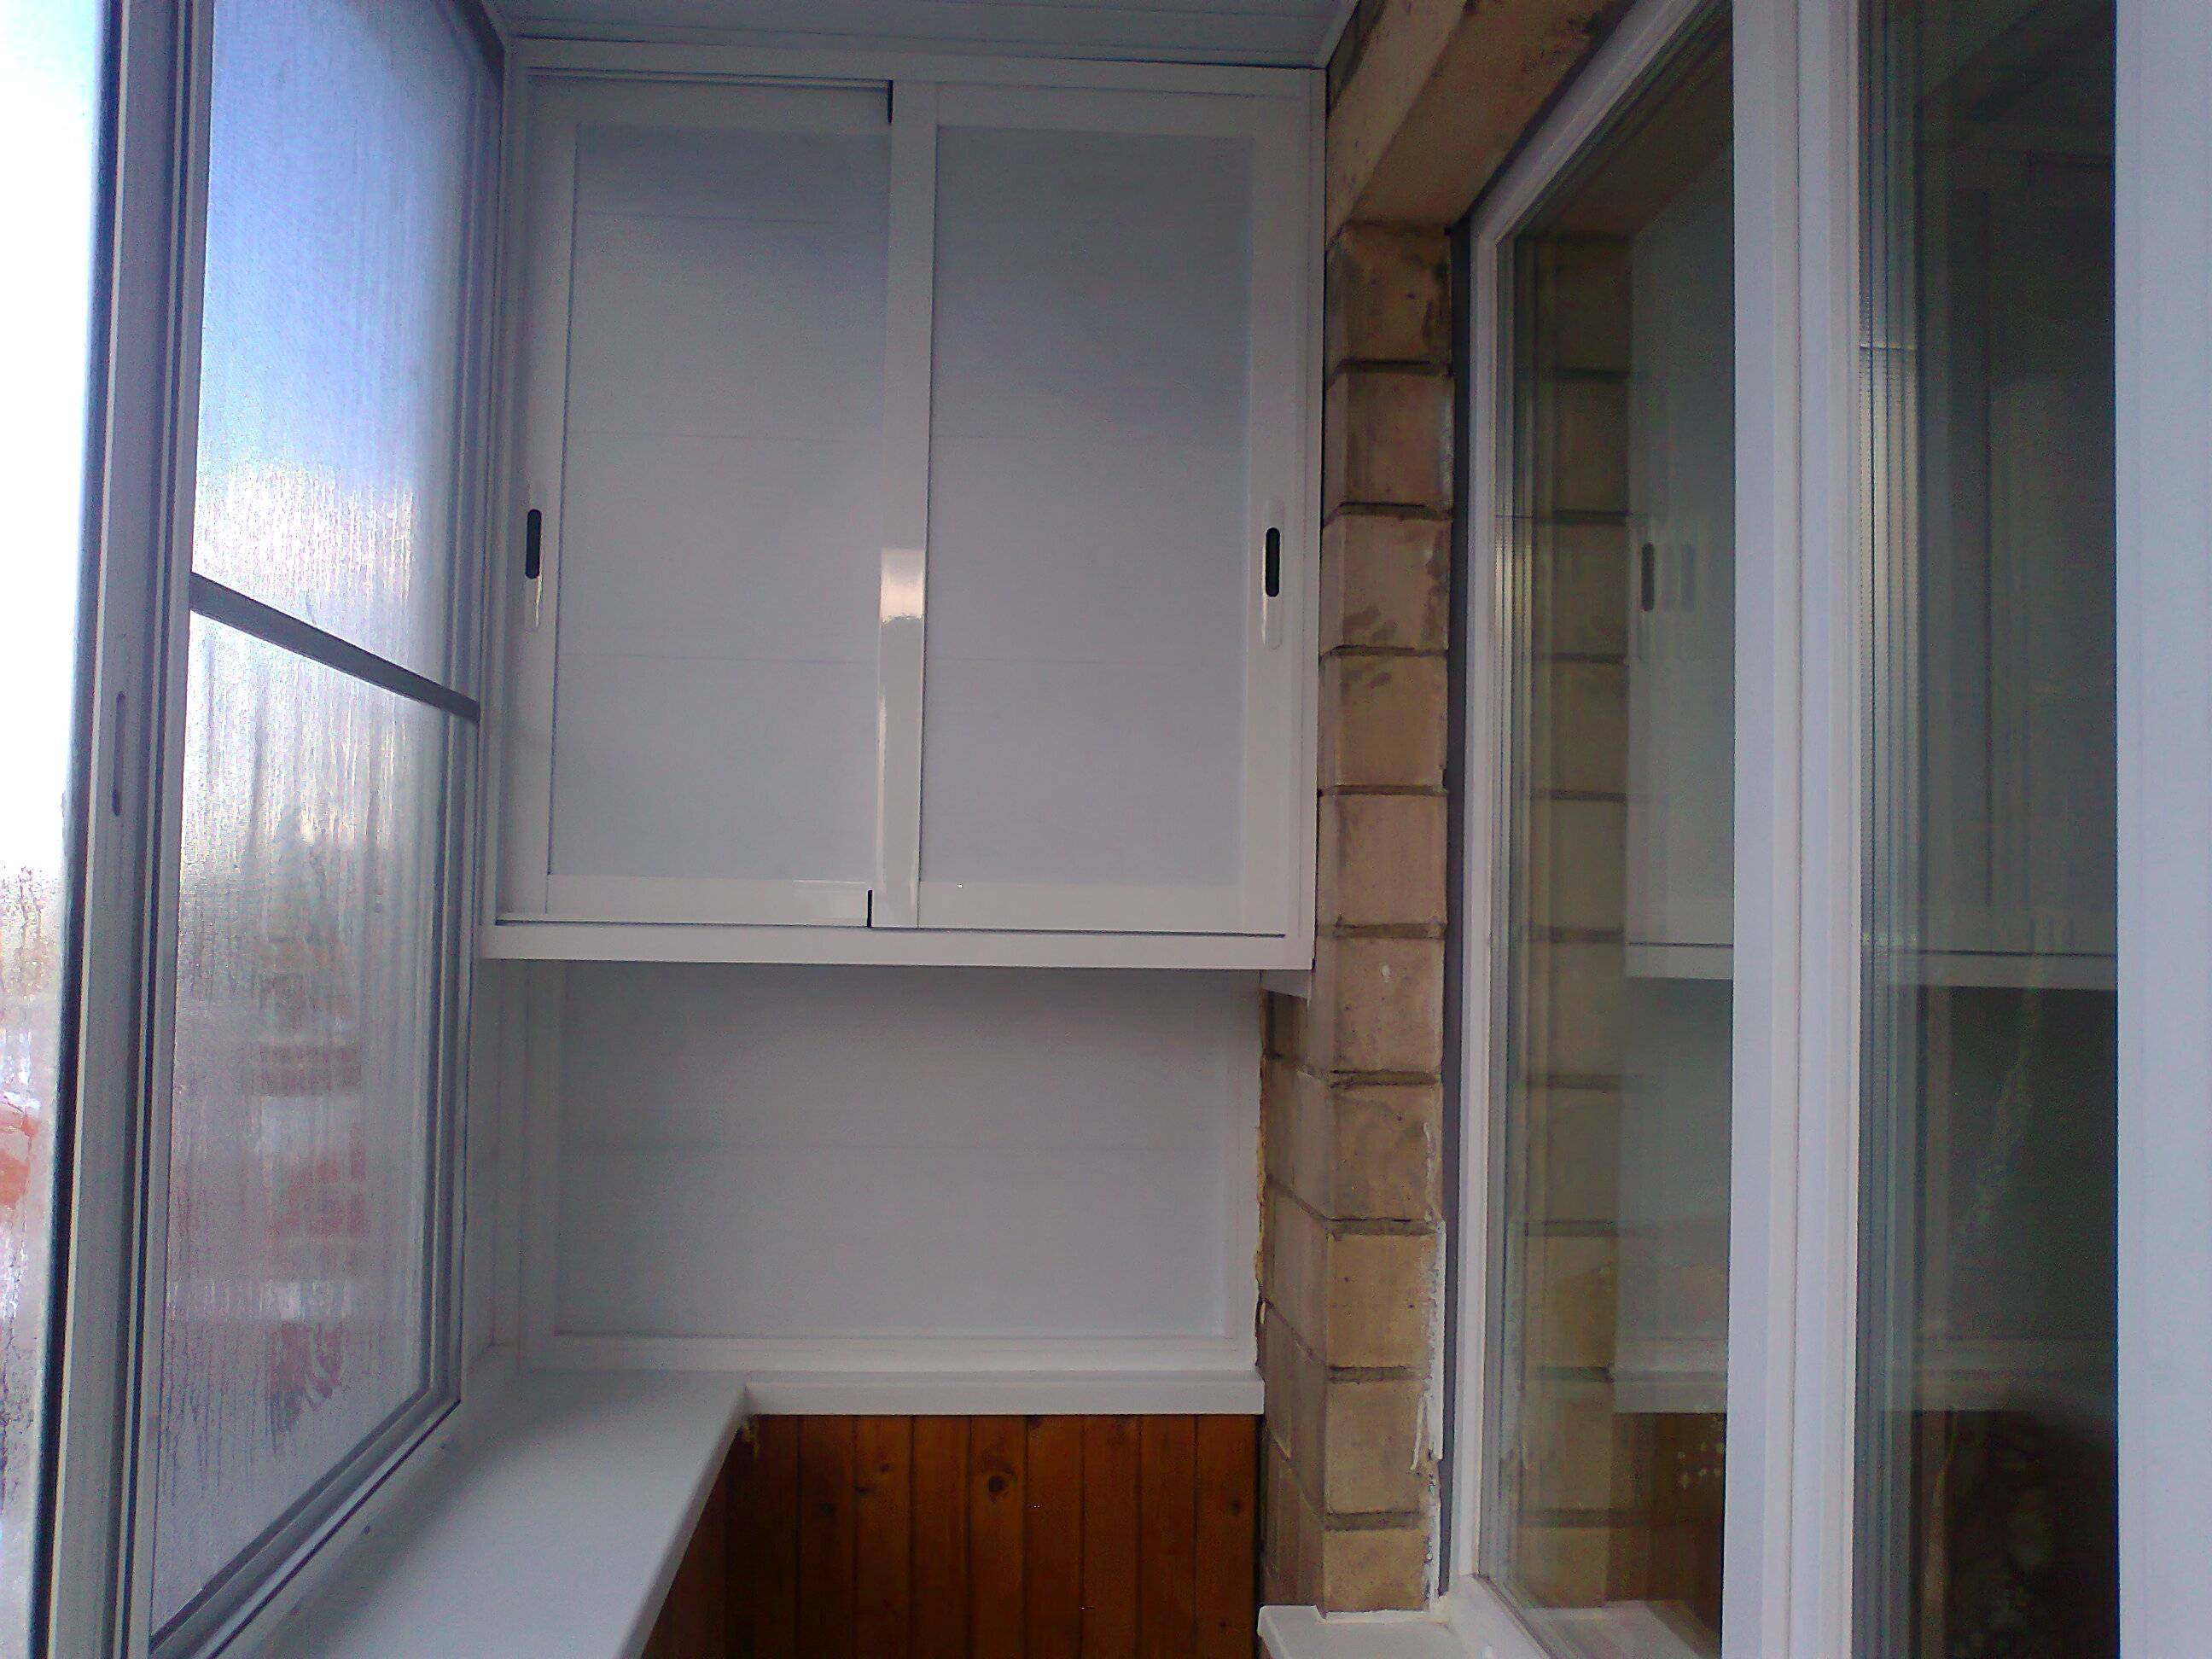 Как сделать шкаф на балконе: своими руками, угловой, встраиваемый, шкаф-купе, из вагонки (фото)